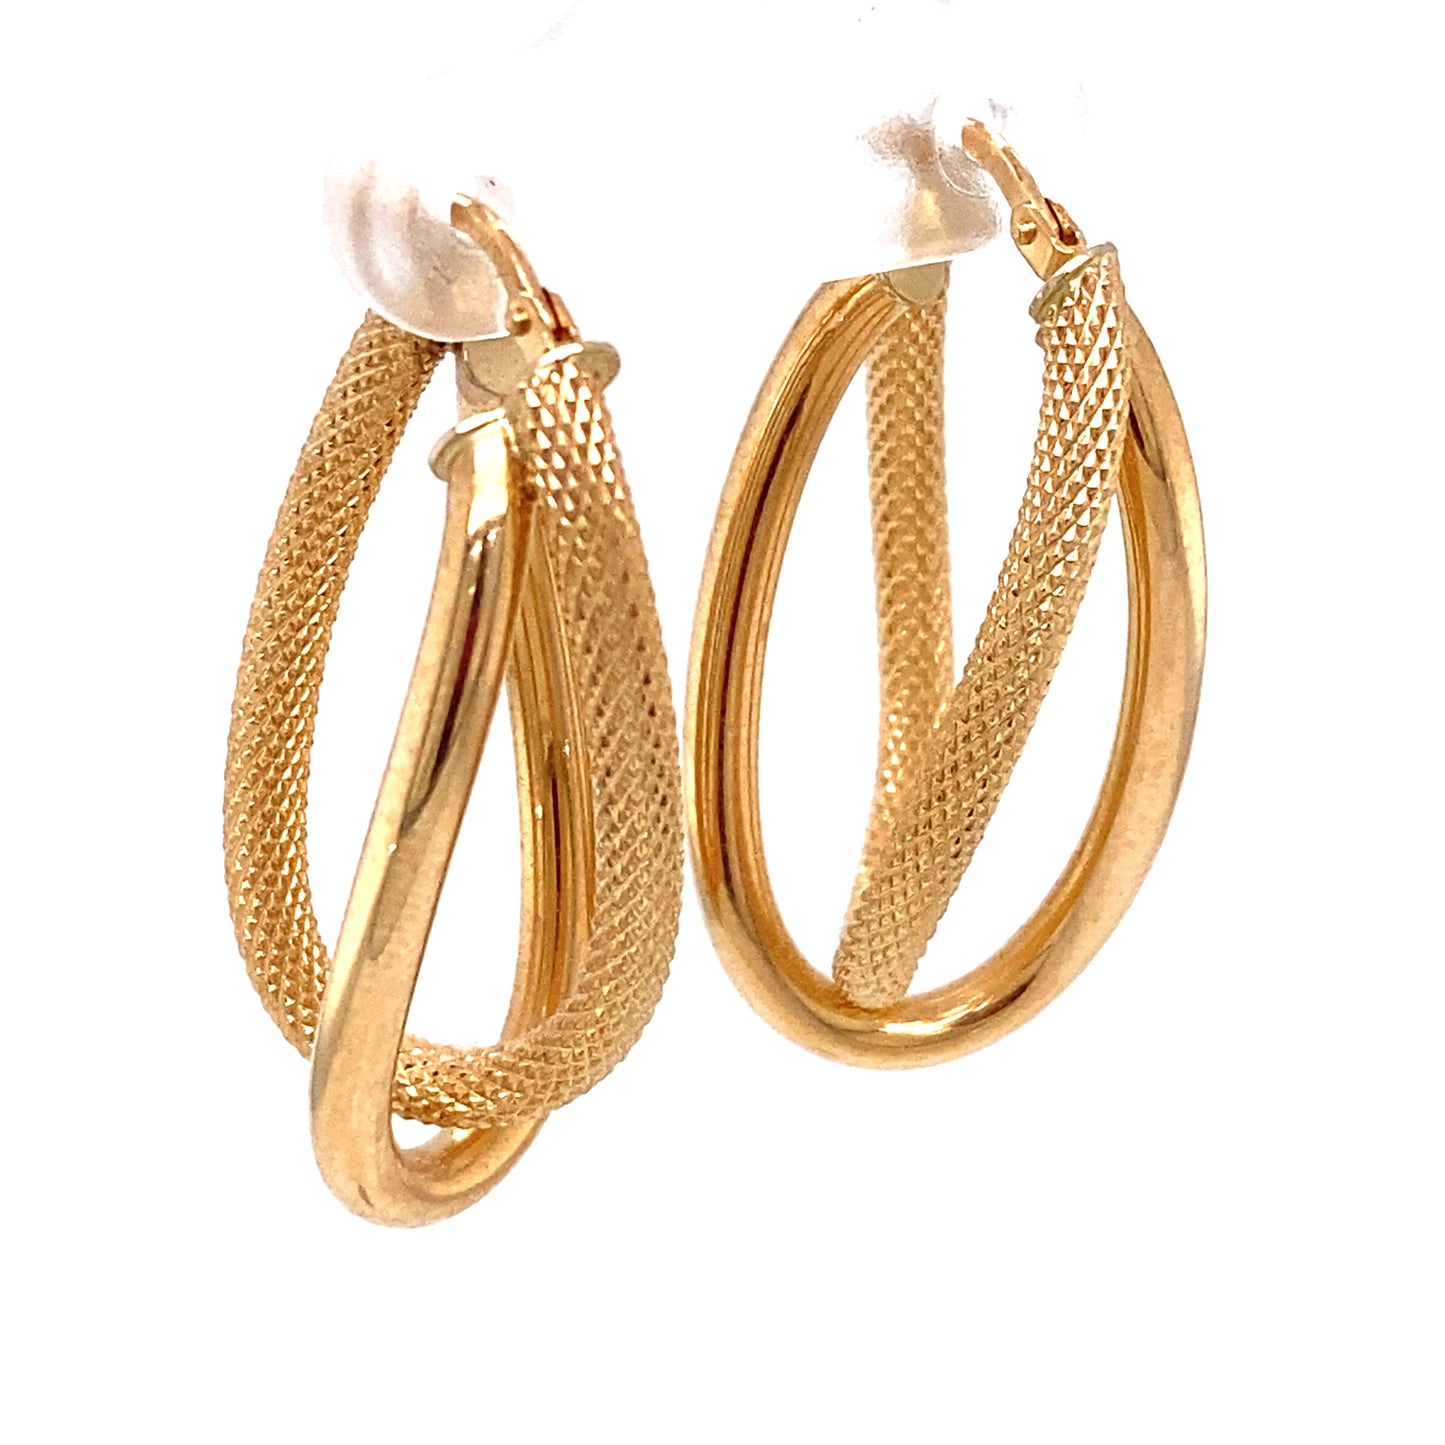 Circa 1990s Italian Twisted Oblong Double Hoop Earrings in 14K Gold